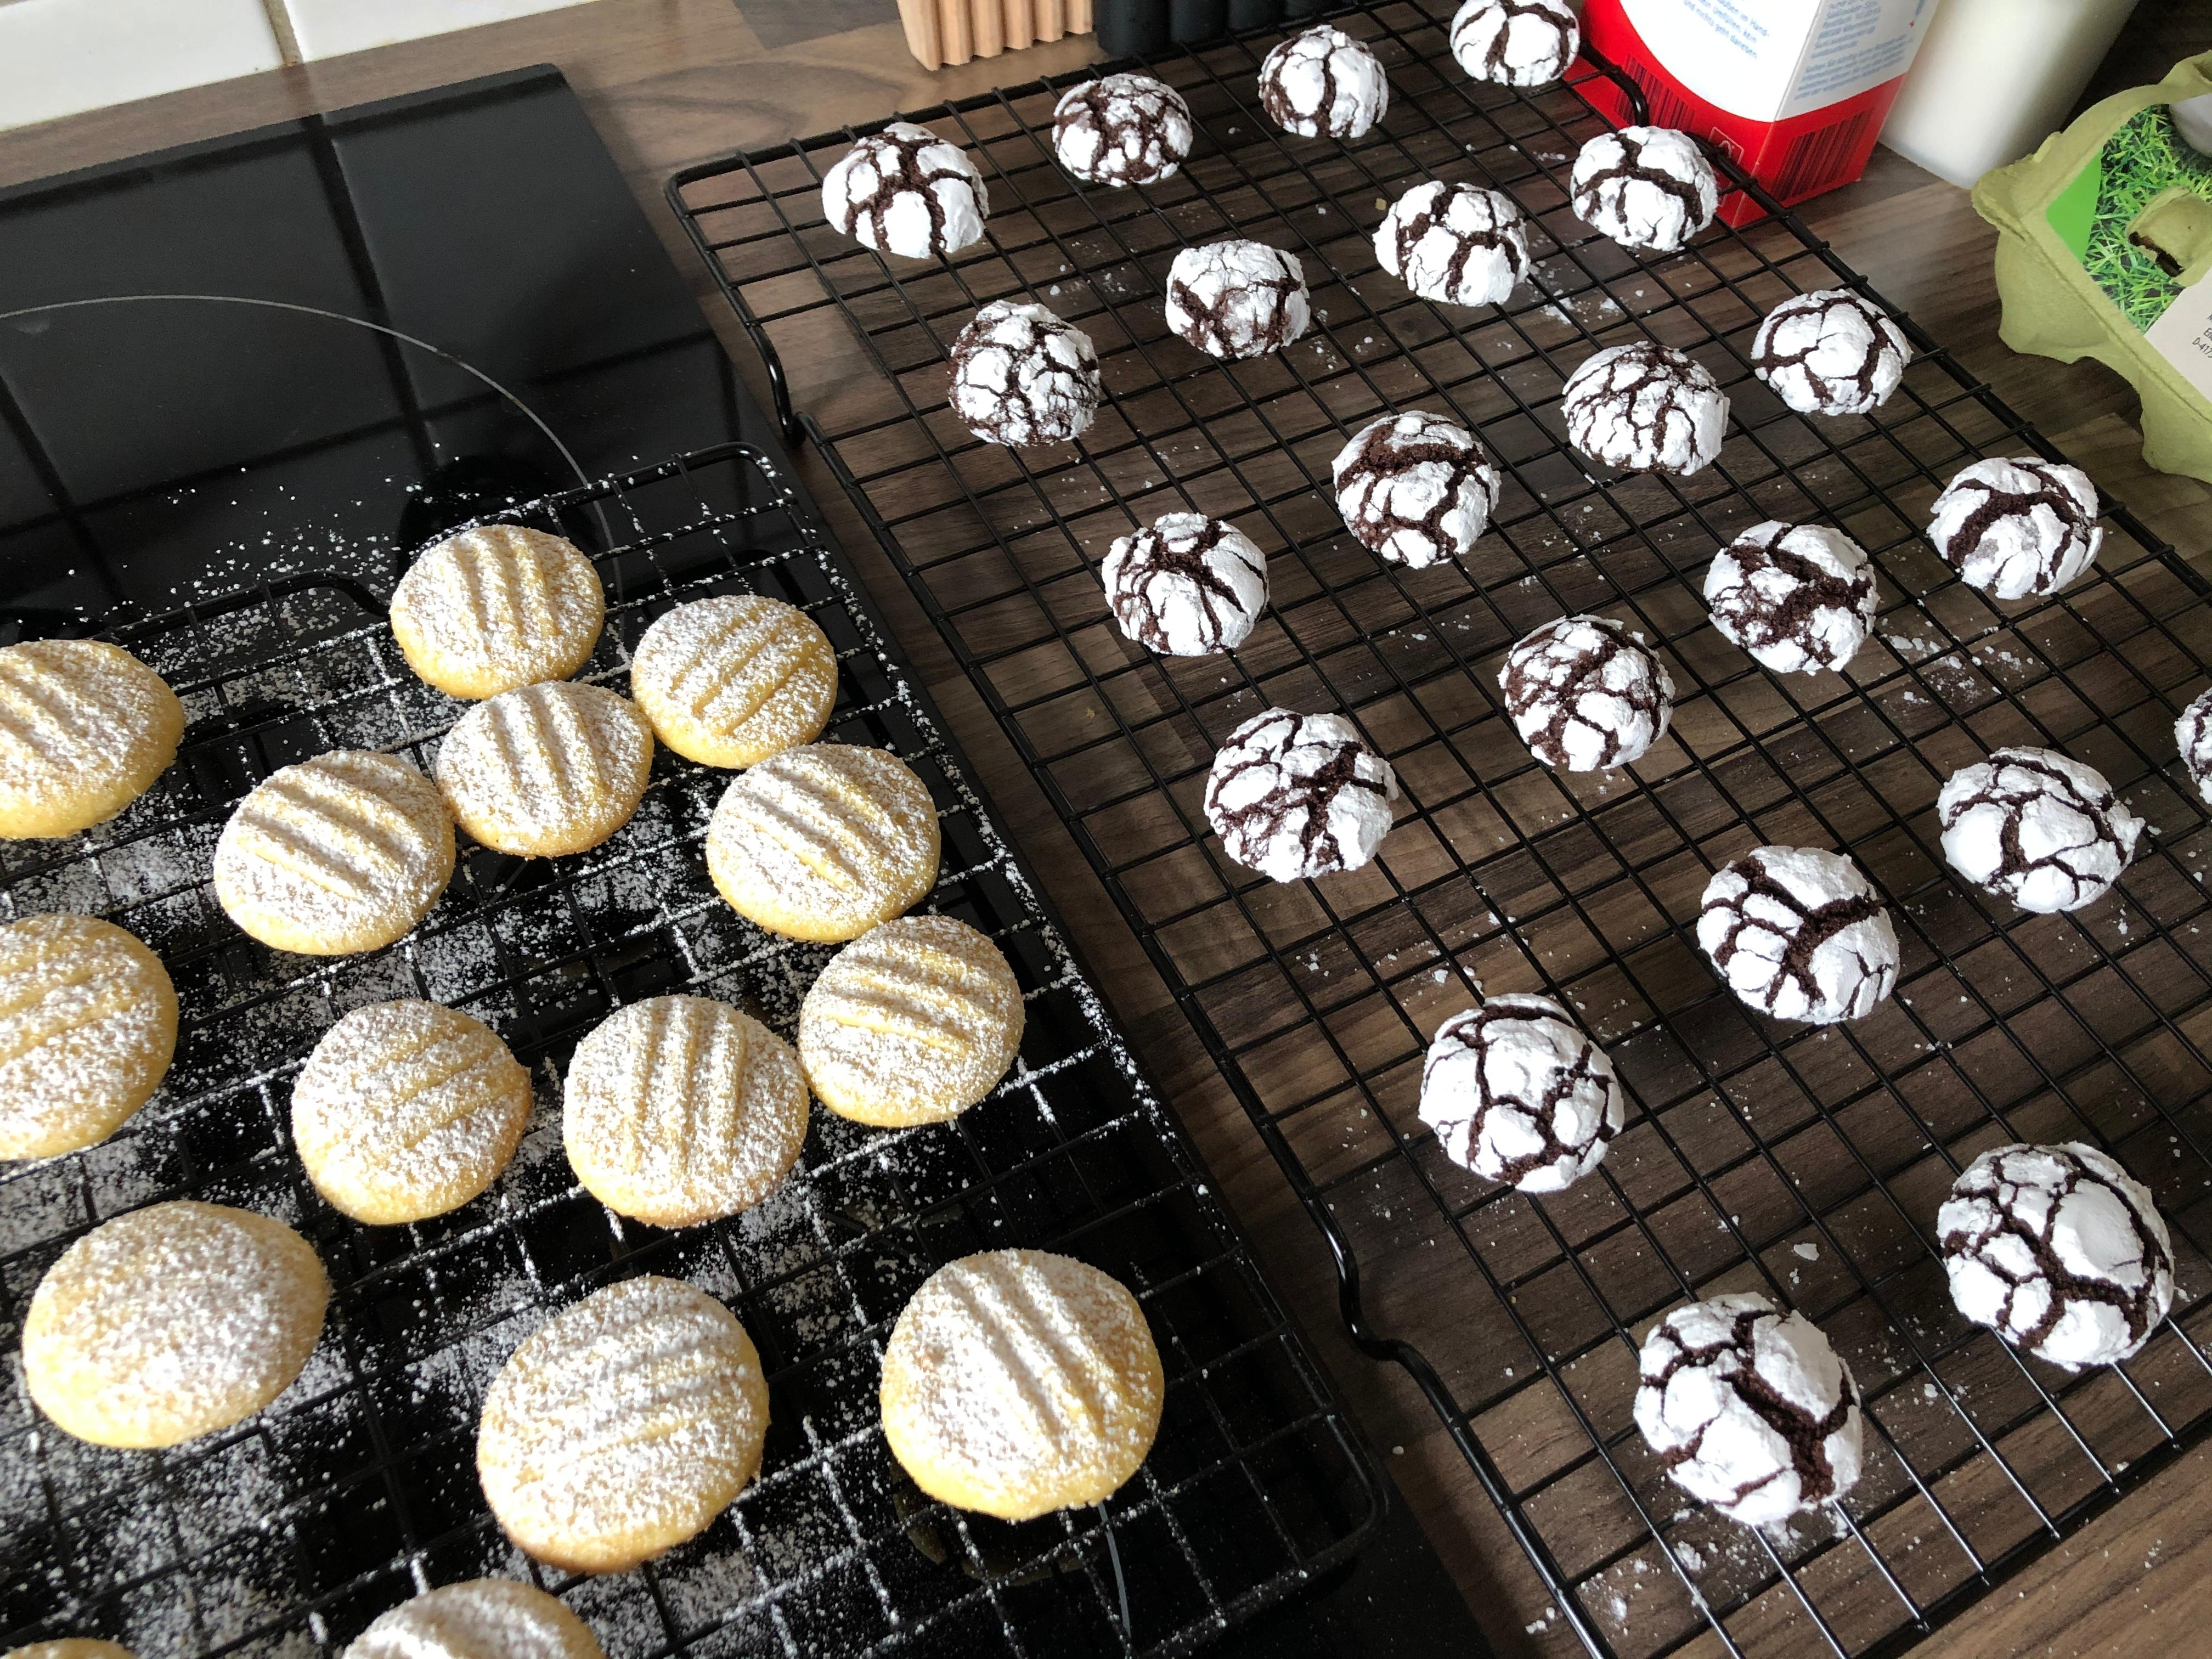 Die Geheimzutat ist immer Liebe. #cookies #baking #weihnachten